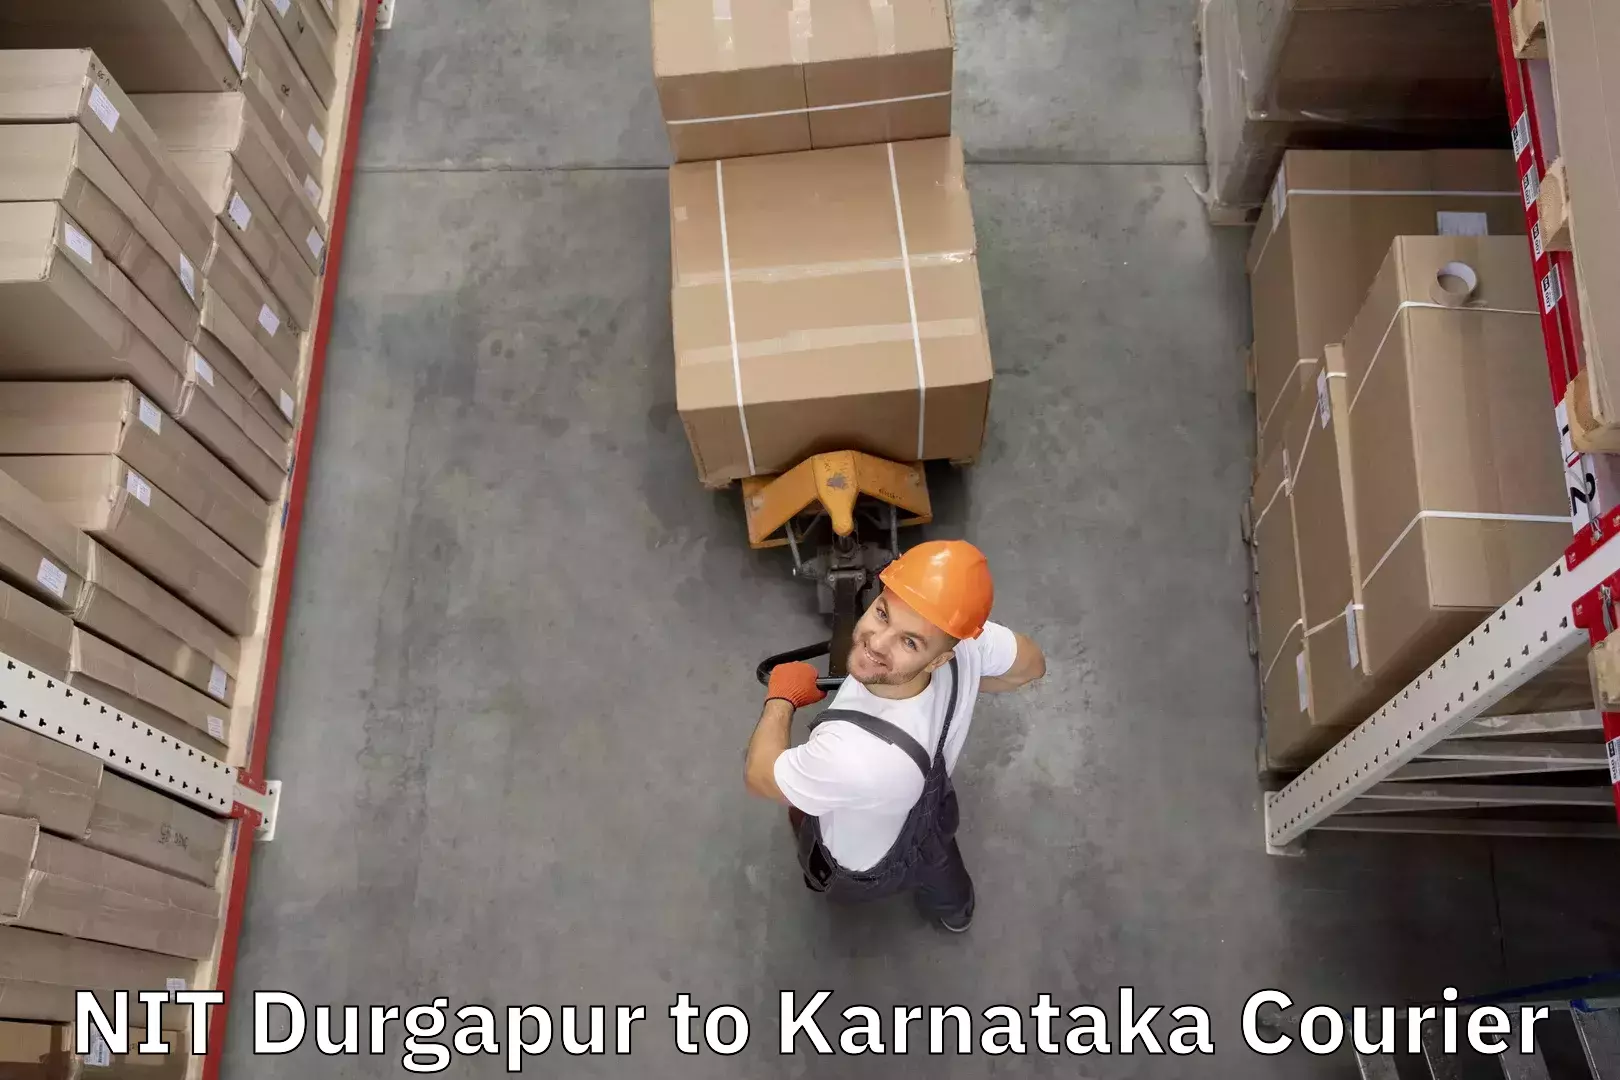 Baggage transport scheduler NIT Durgapur to Karnataka